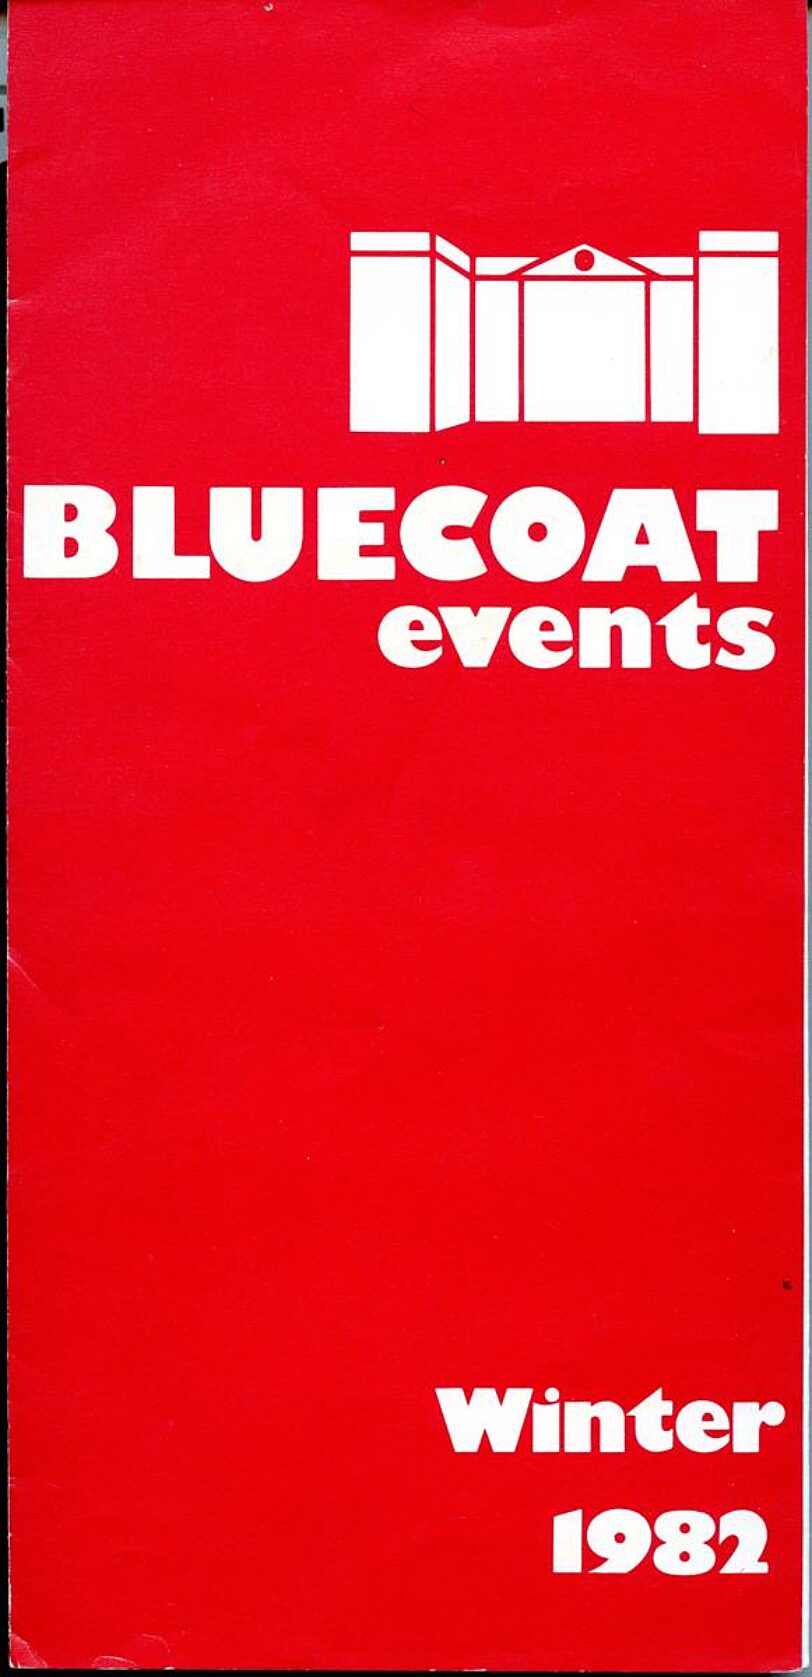 Winter 1982 Events Brochure